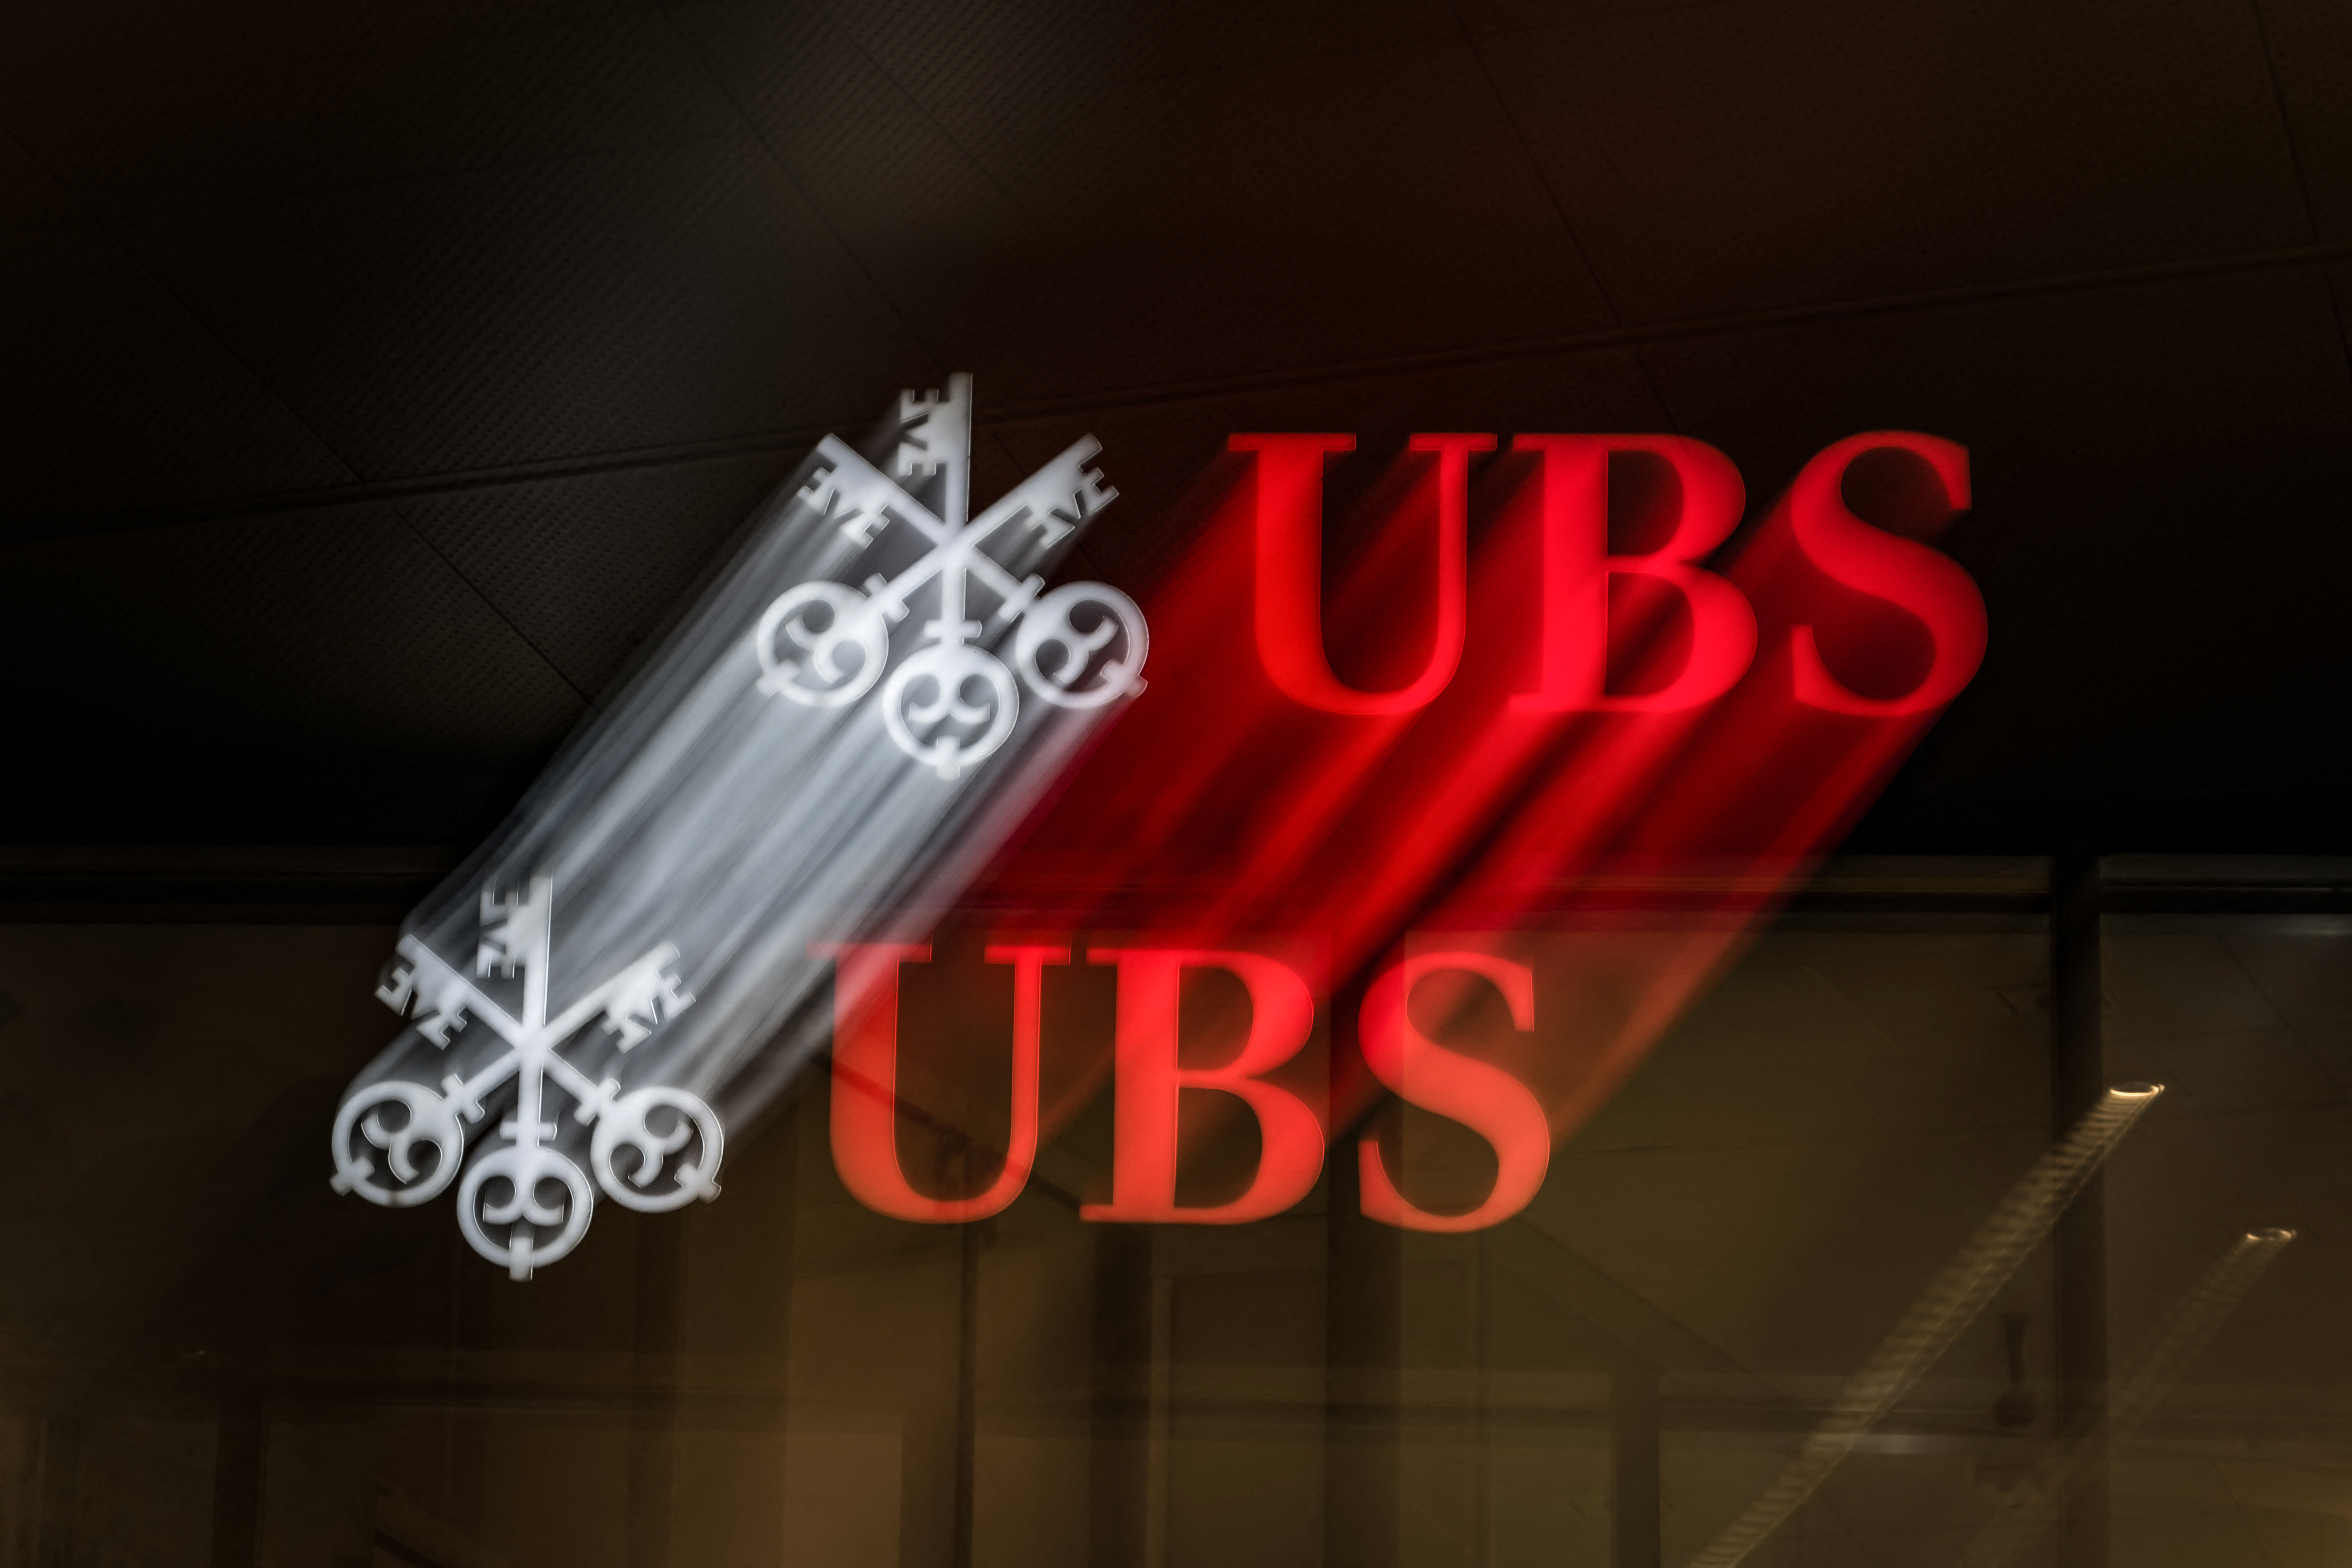 بنك UBS السويسري يعتزم إطلاق عملية إعادة شراء أسهم بما يصل إلى 2 مليار دولار